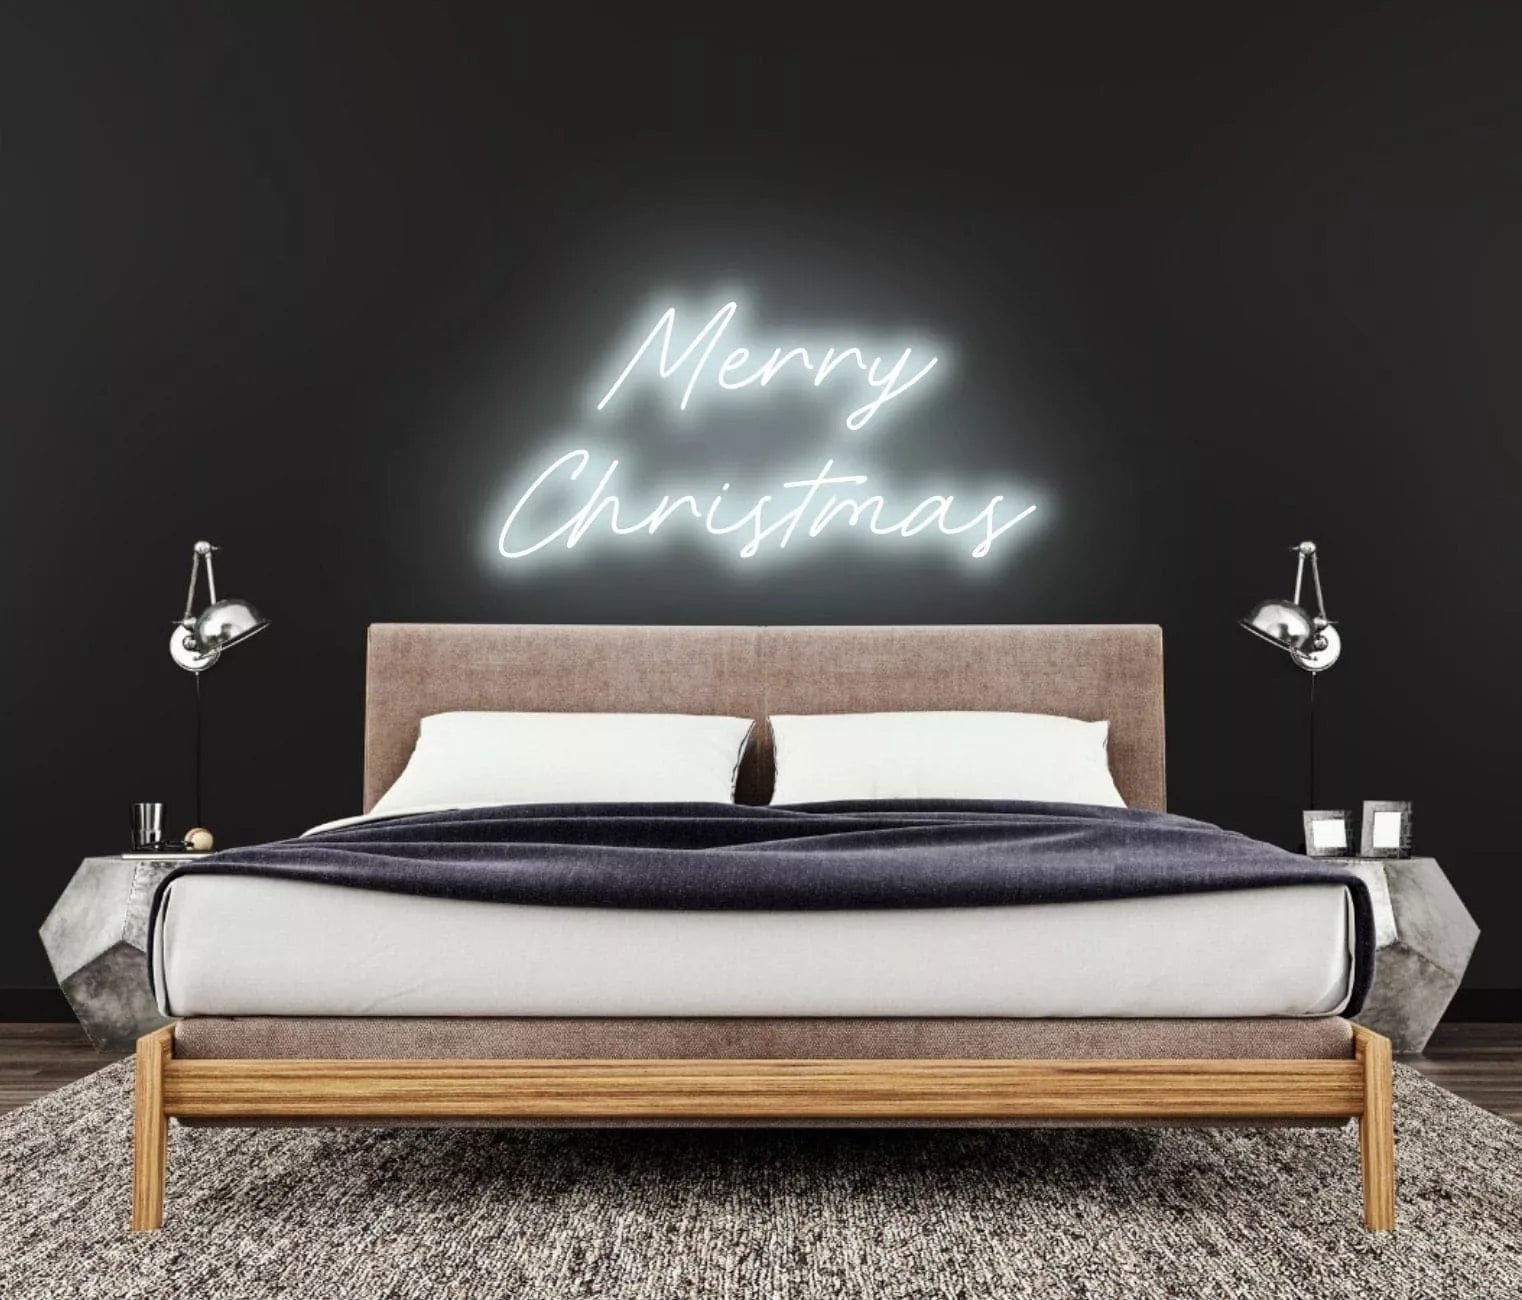 "Merry Christmas" Neon Sign - NeonHub